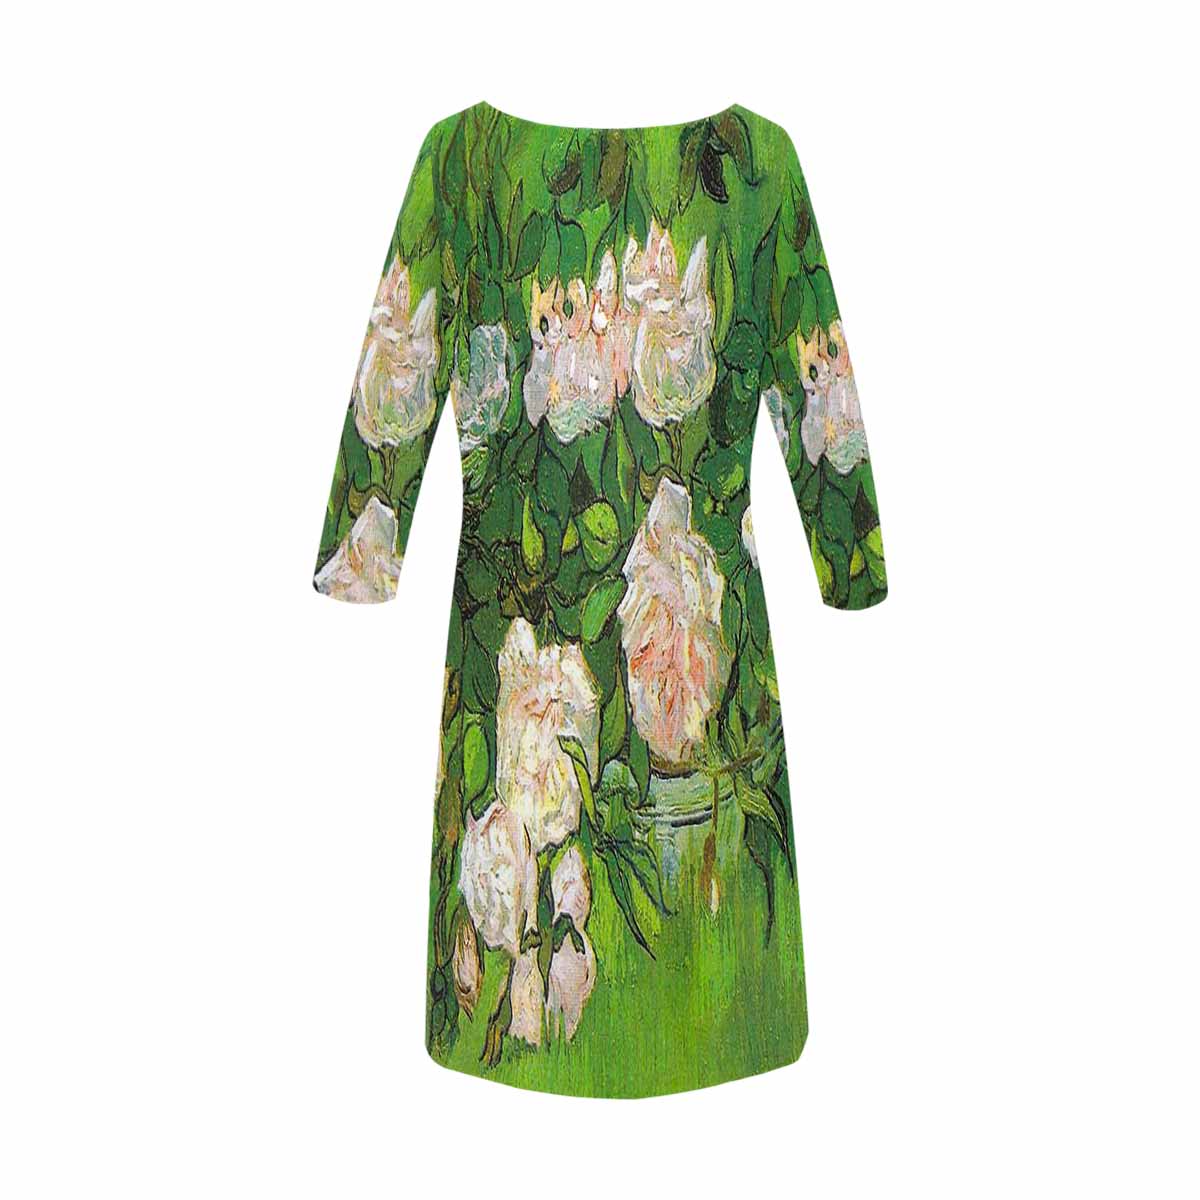 Vintage floral loose dress, model D29532 Design 06